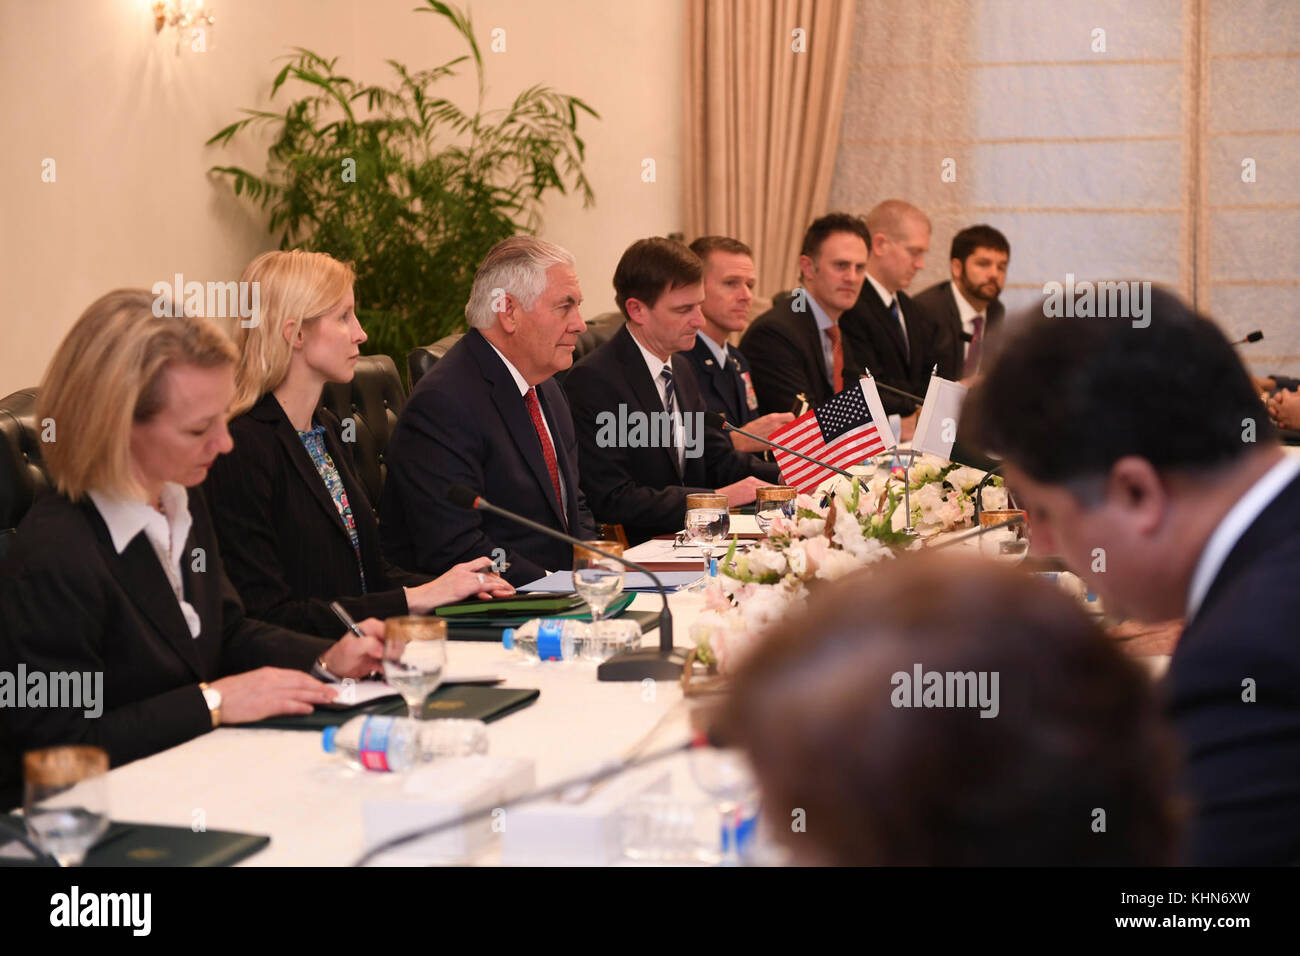 El Secretario de Estado estadounidense Tillerson, flanqueado por su delegación, participa en una reunión bilateral con el primer Ministro paquistaní Shahid Khaqan Abbasi y los representantes del Gobierno paquistaní en la Casa del primer Ministro en Islamabad, Pakistán, el 24 de octubre de 2017 Foto de stock